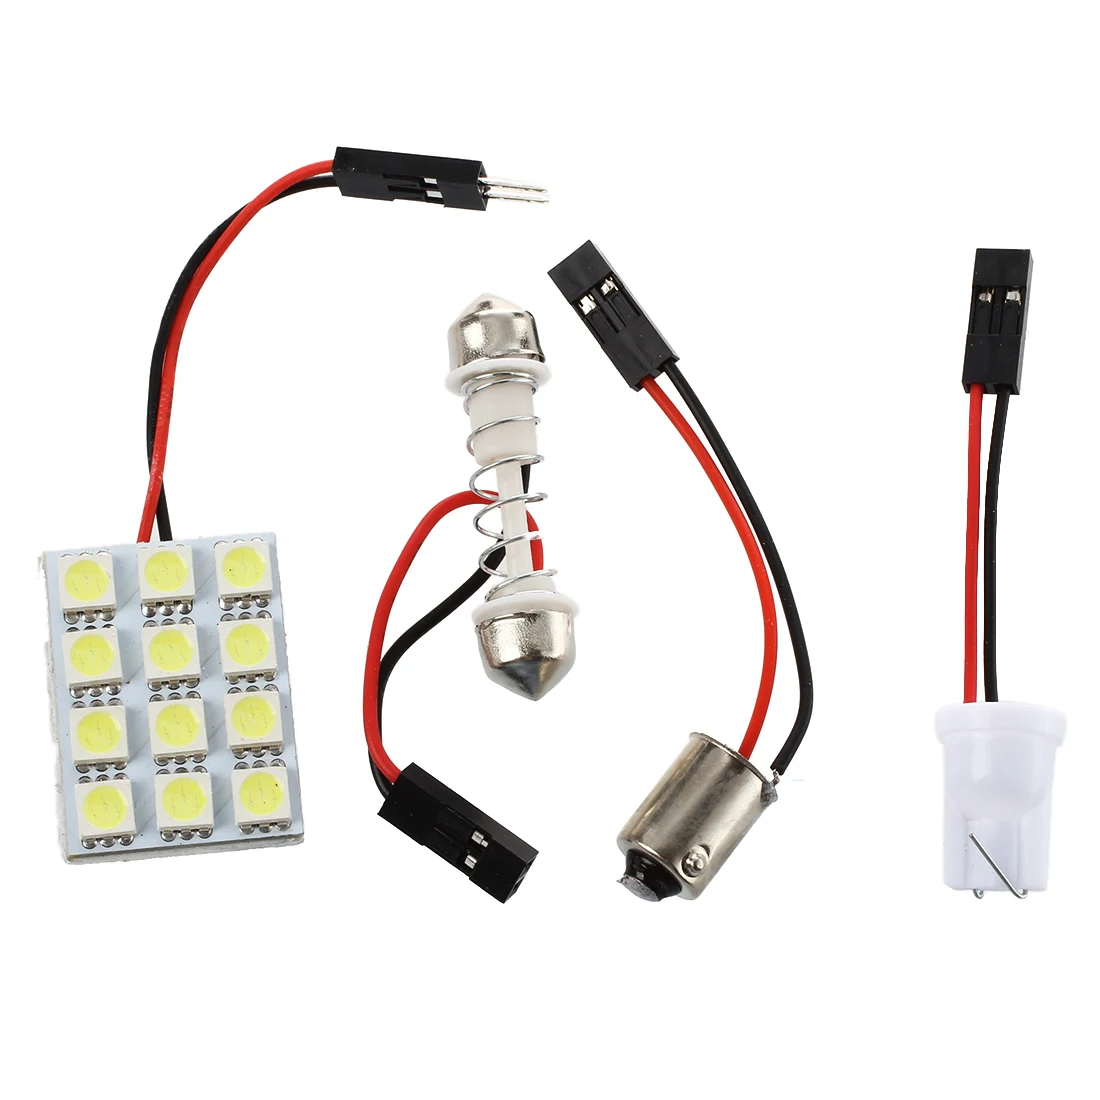 12 SMD 5050 белый светодиодный панели внутреннего освещения лампы T10 гнездо + BA9S разъем + гирлянда адаптер